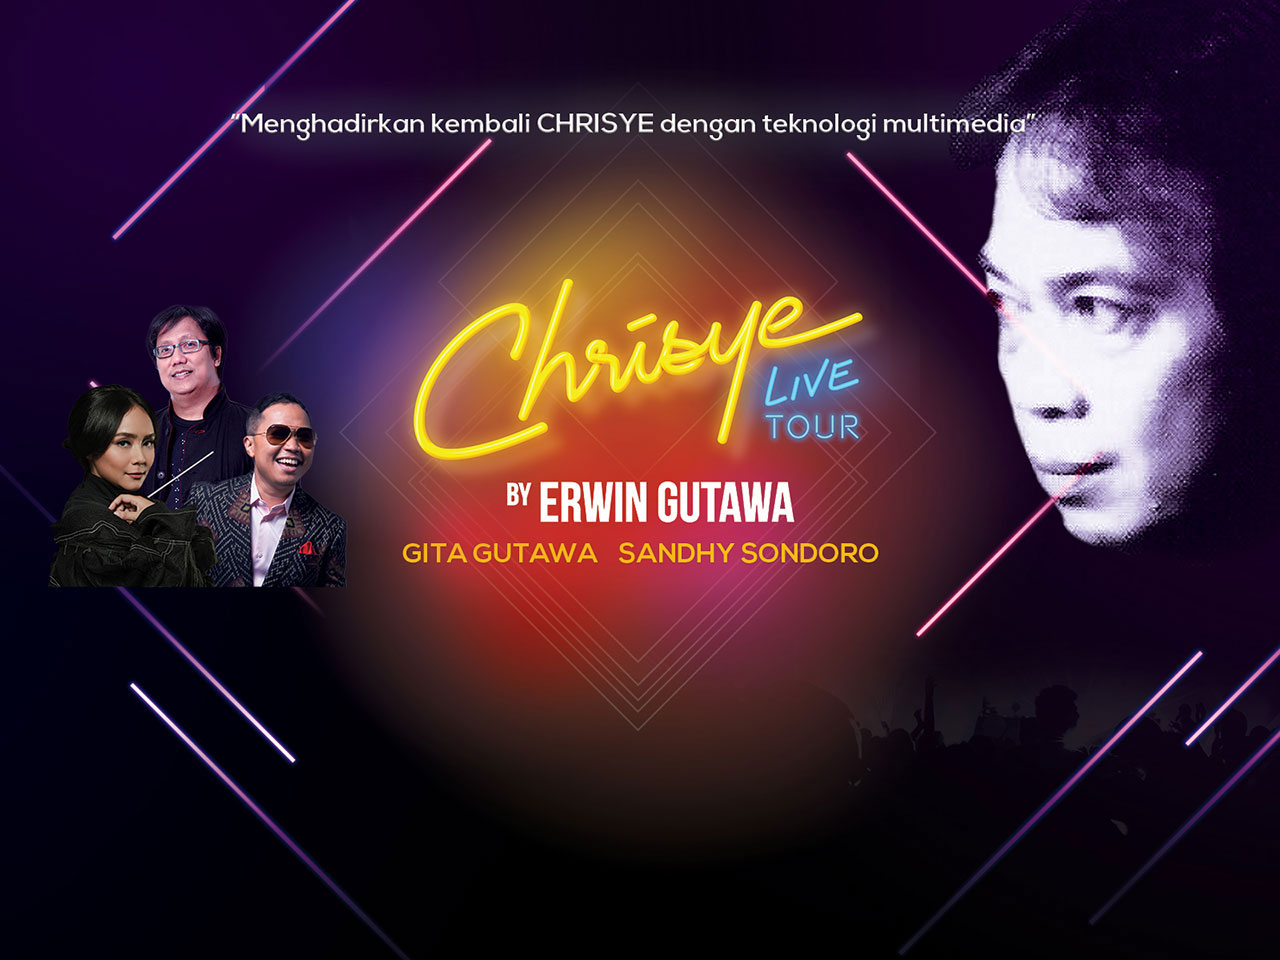 Erwin Gutawa Ajak Penggemar Merasakan Kehadiran Chrisye Kembali dalam ‘Chrisye Live Tour’